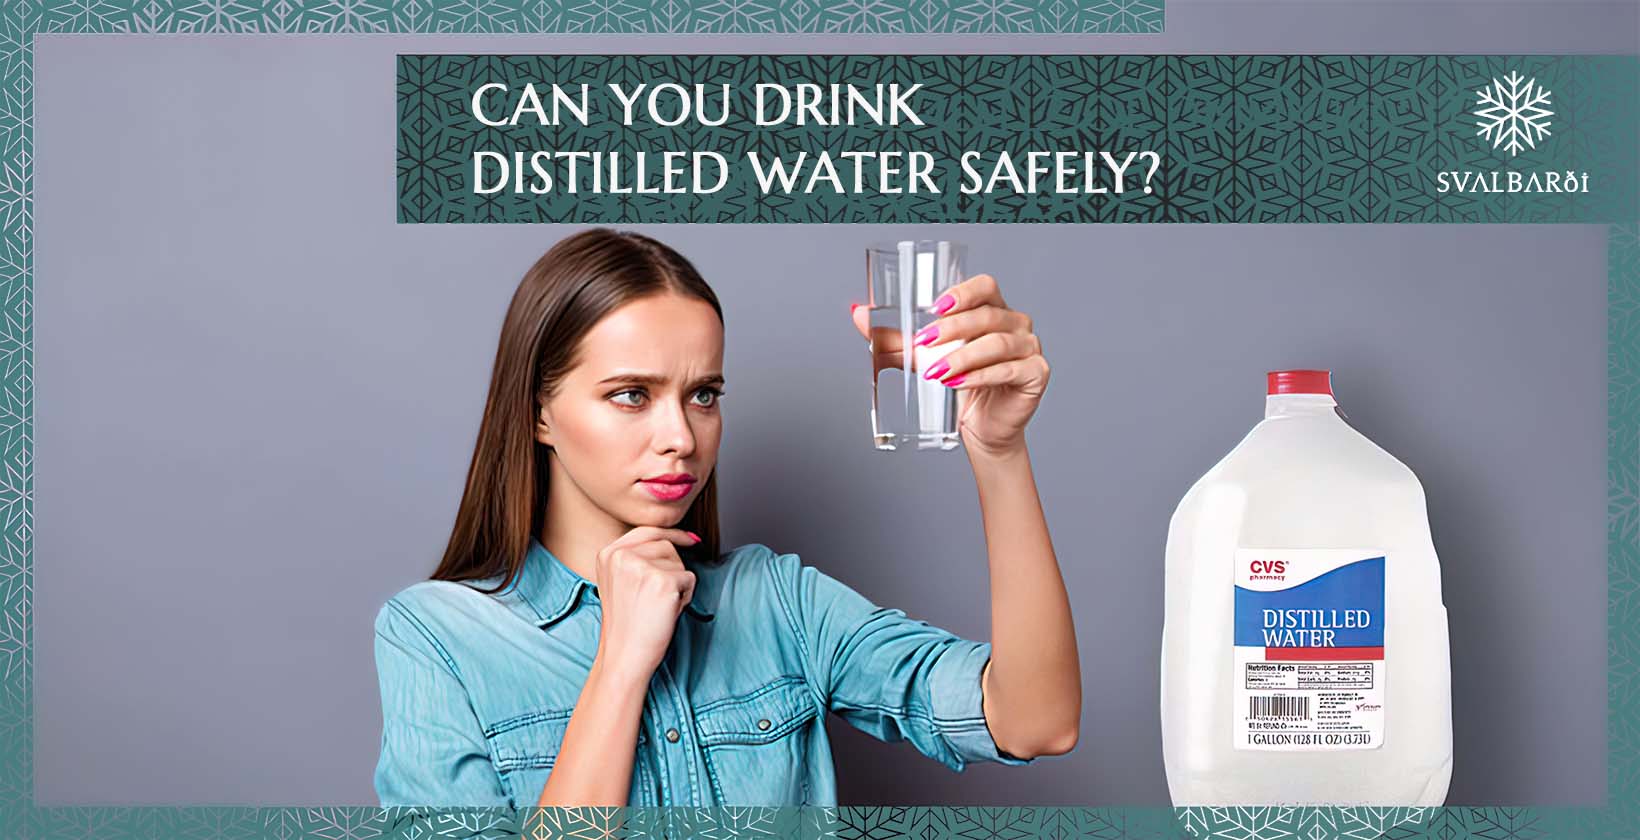 Kann man destilliertes Wasser unbedenklich trinken?